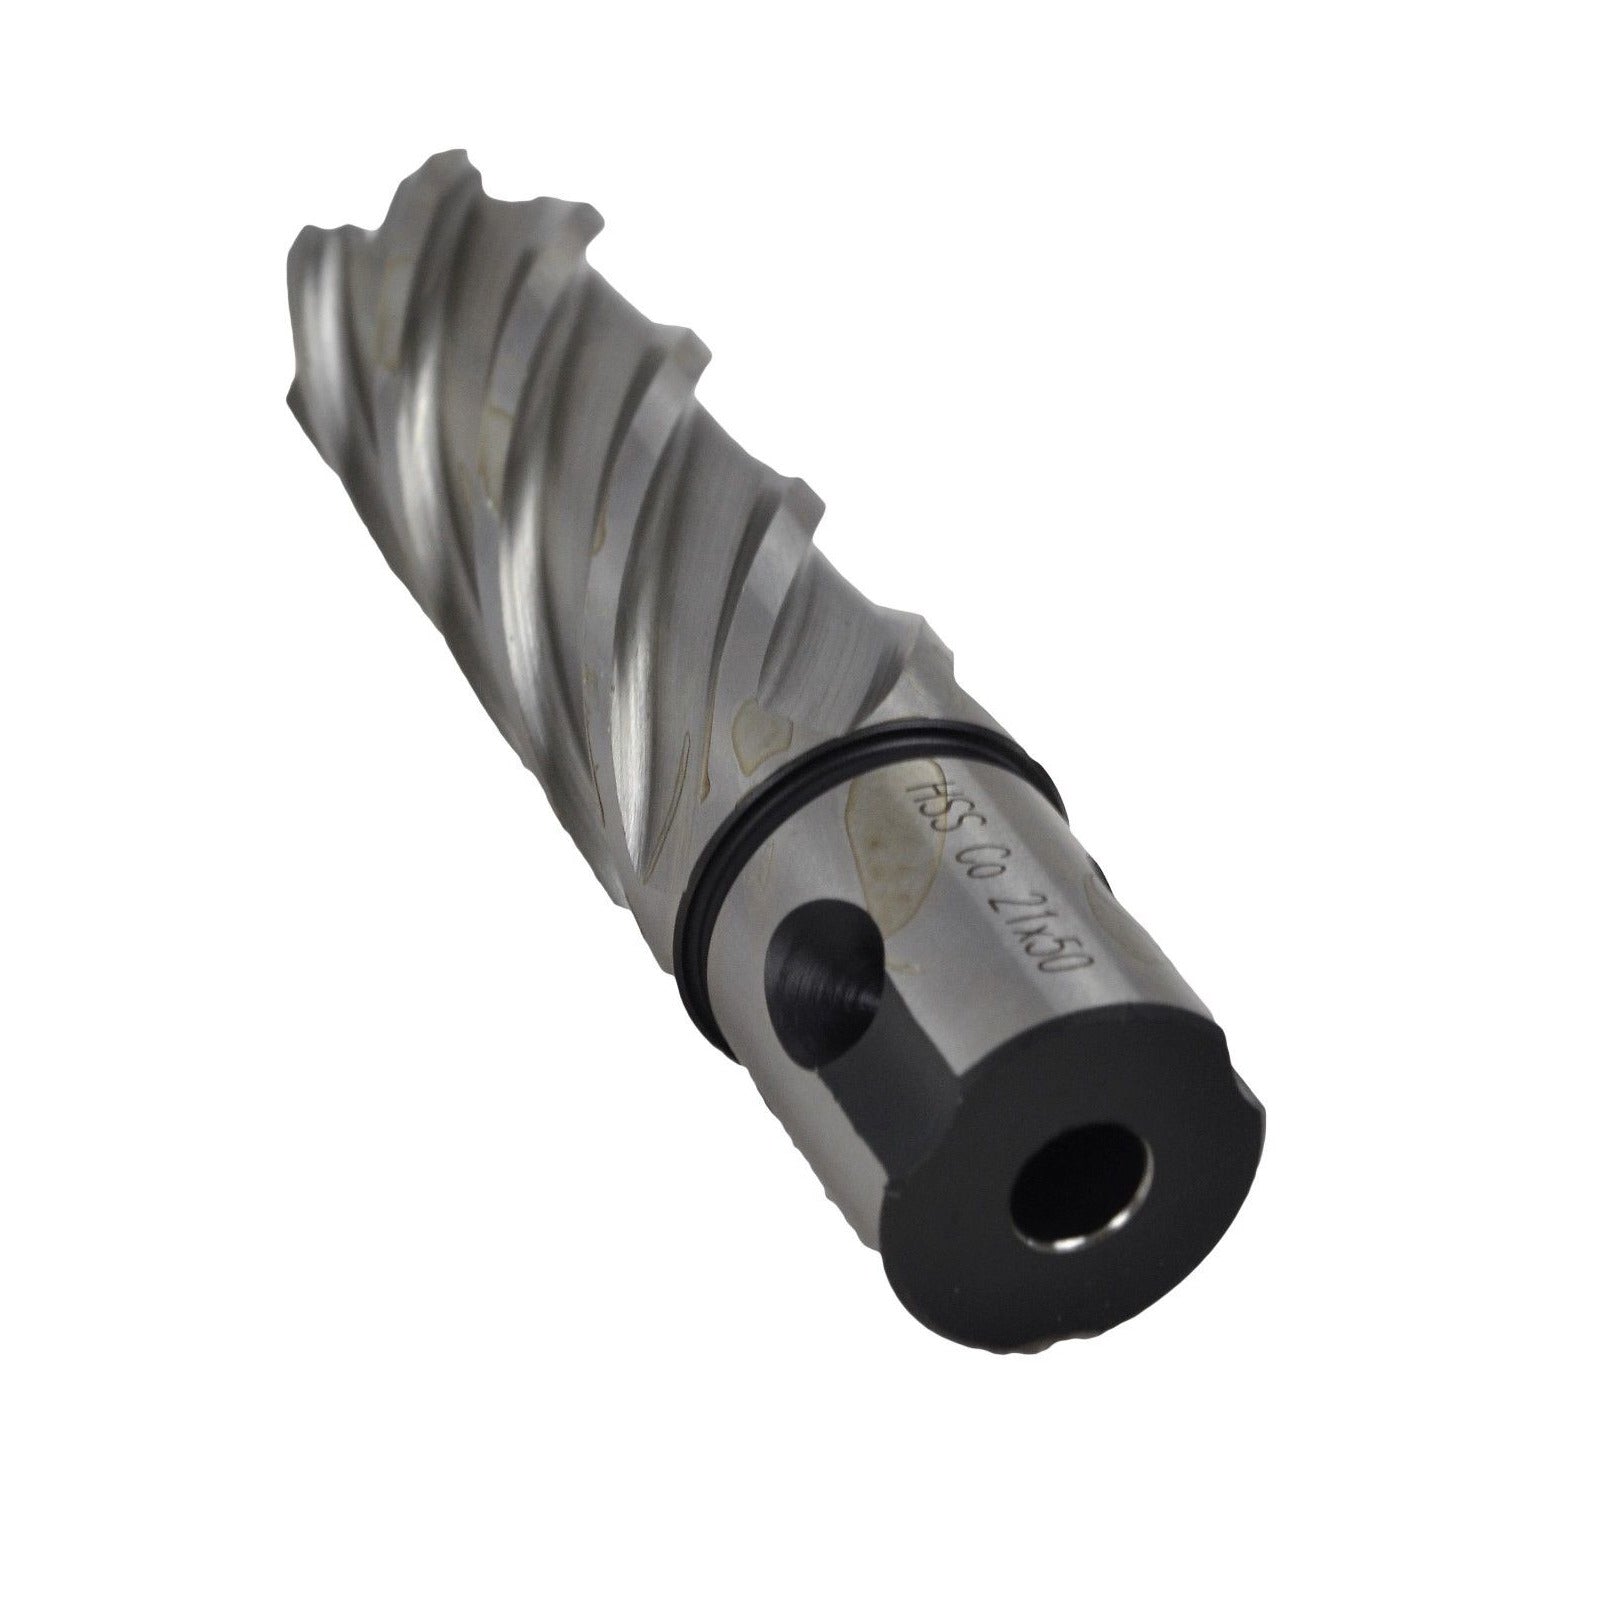 21x50mm HSS Annular Broach Cutter ; Magnetic Drill ; Rotabroach ; Universal Shank